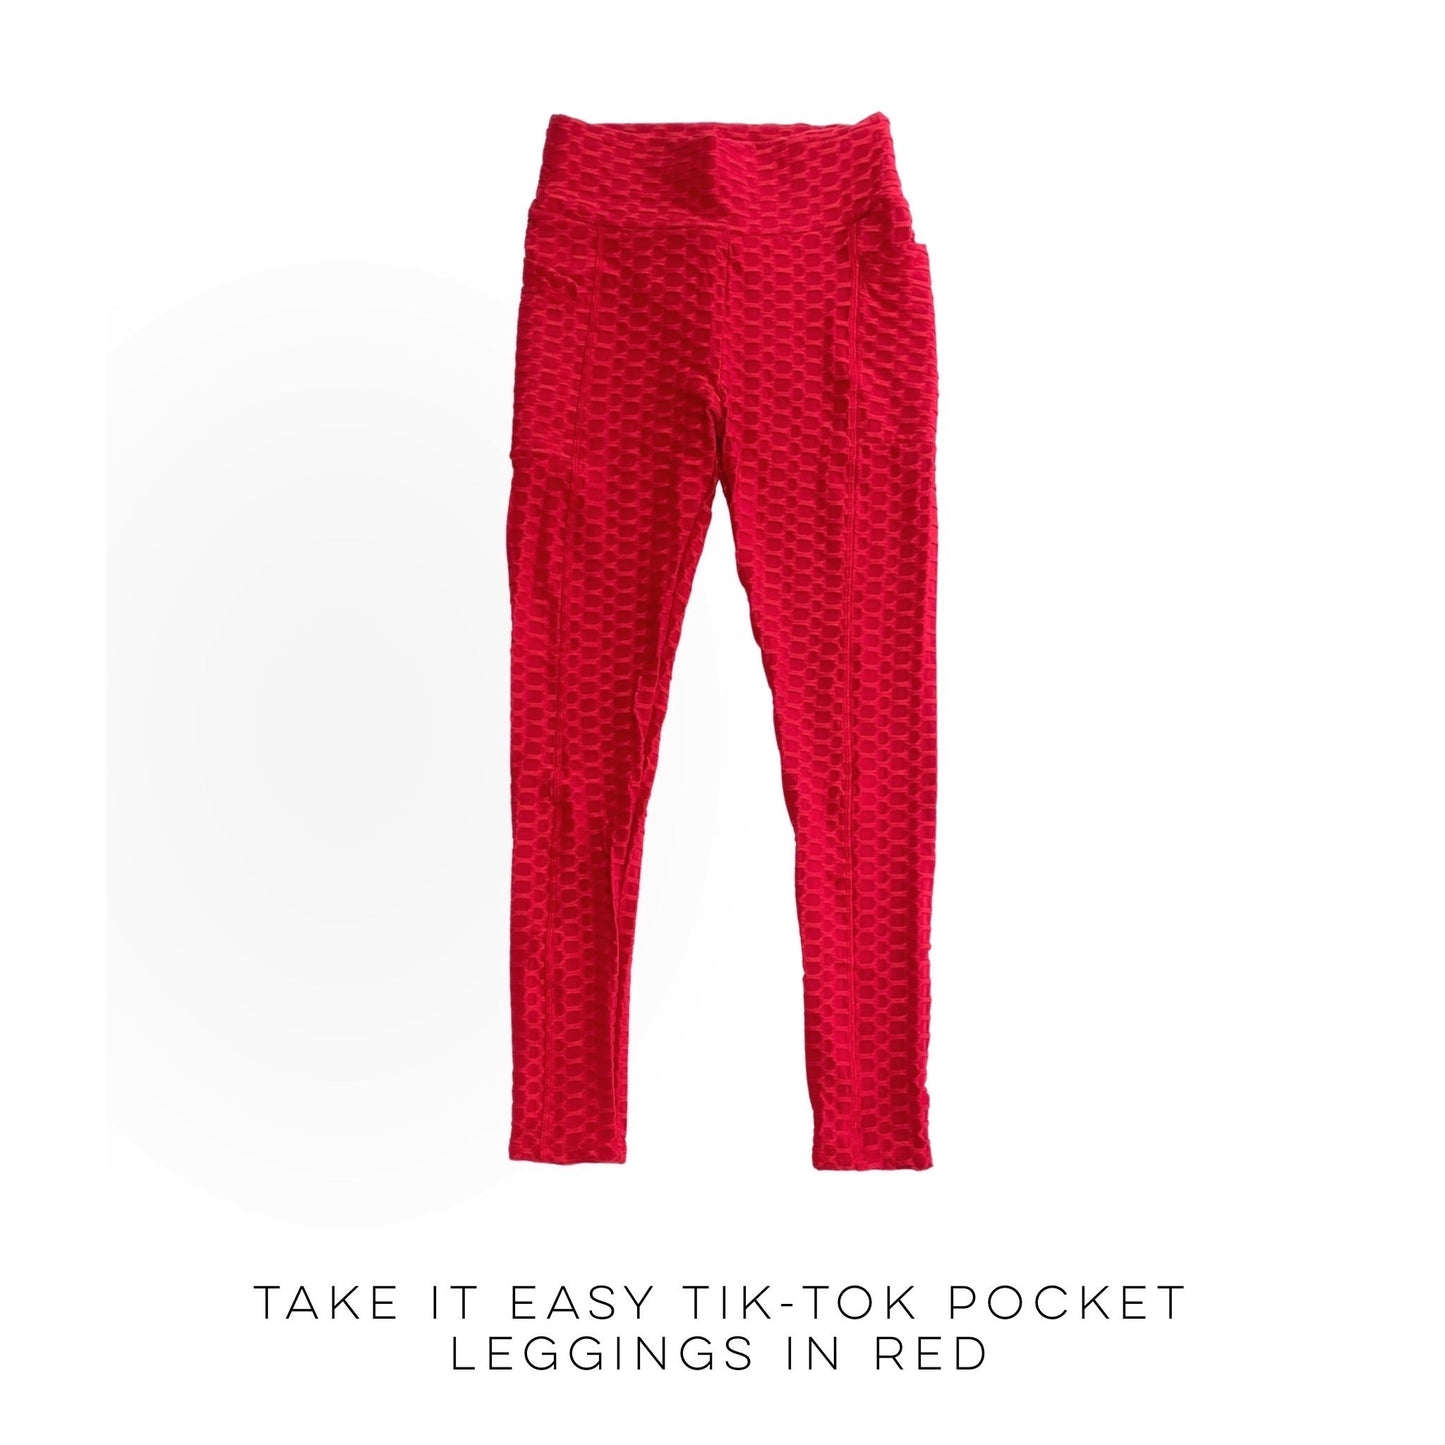 Take It Easy Tik-Tok Pocket Leggings in Red